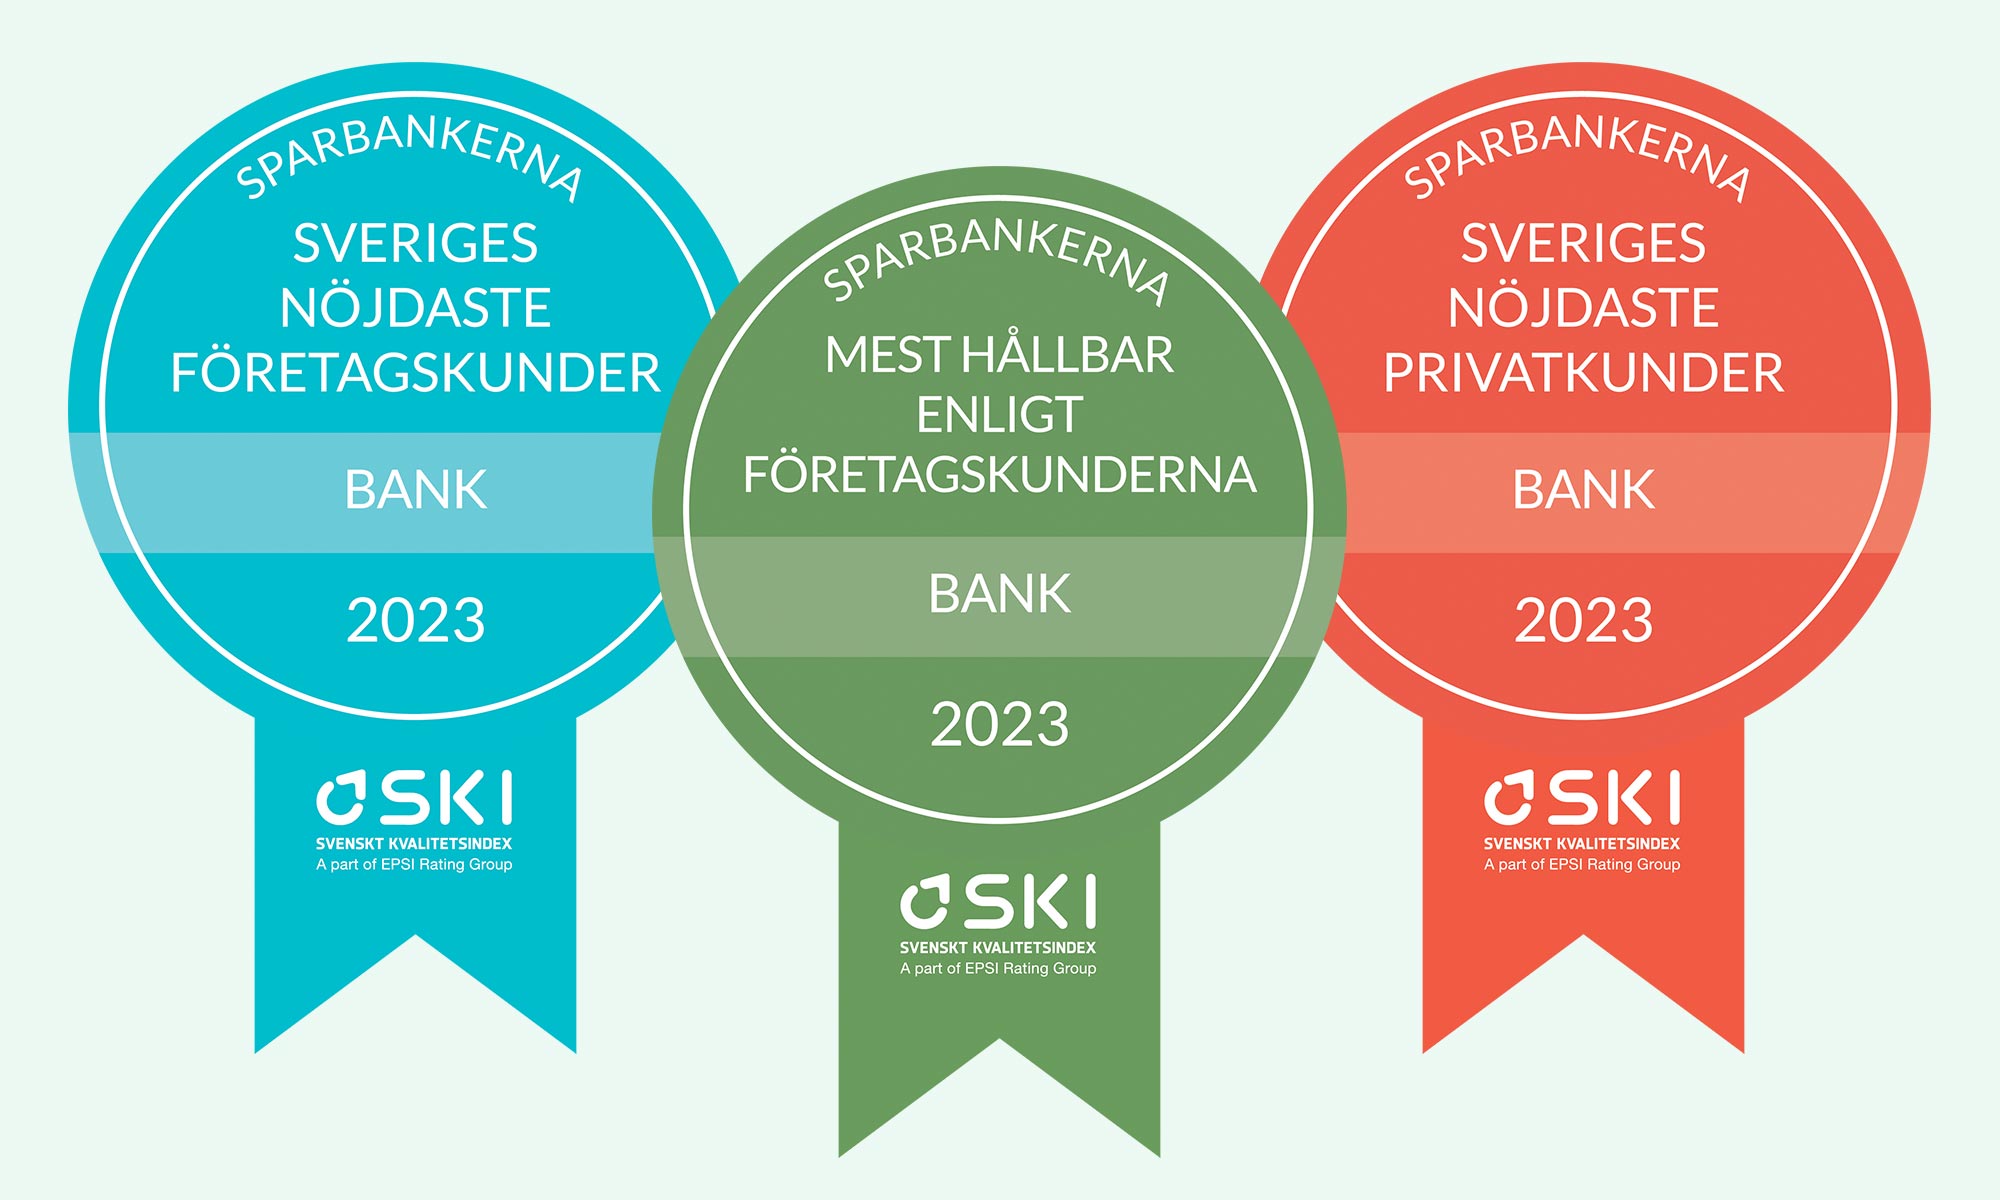 Sveriges nöjdaste kunder, bank 2023